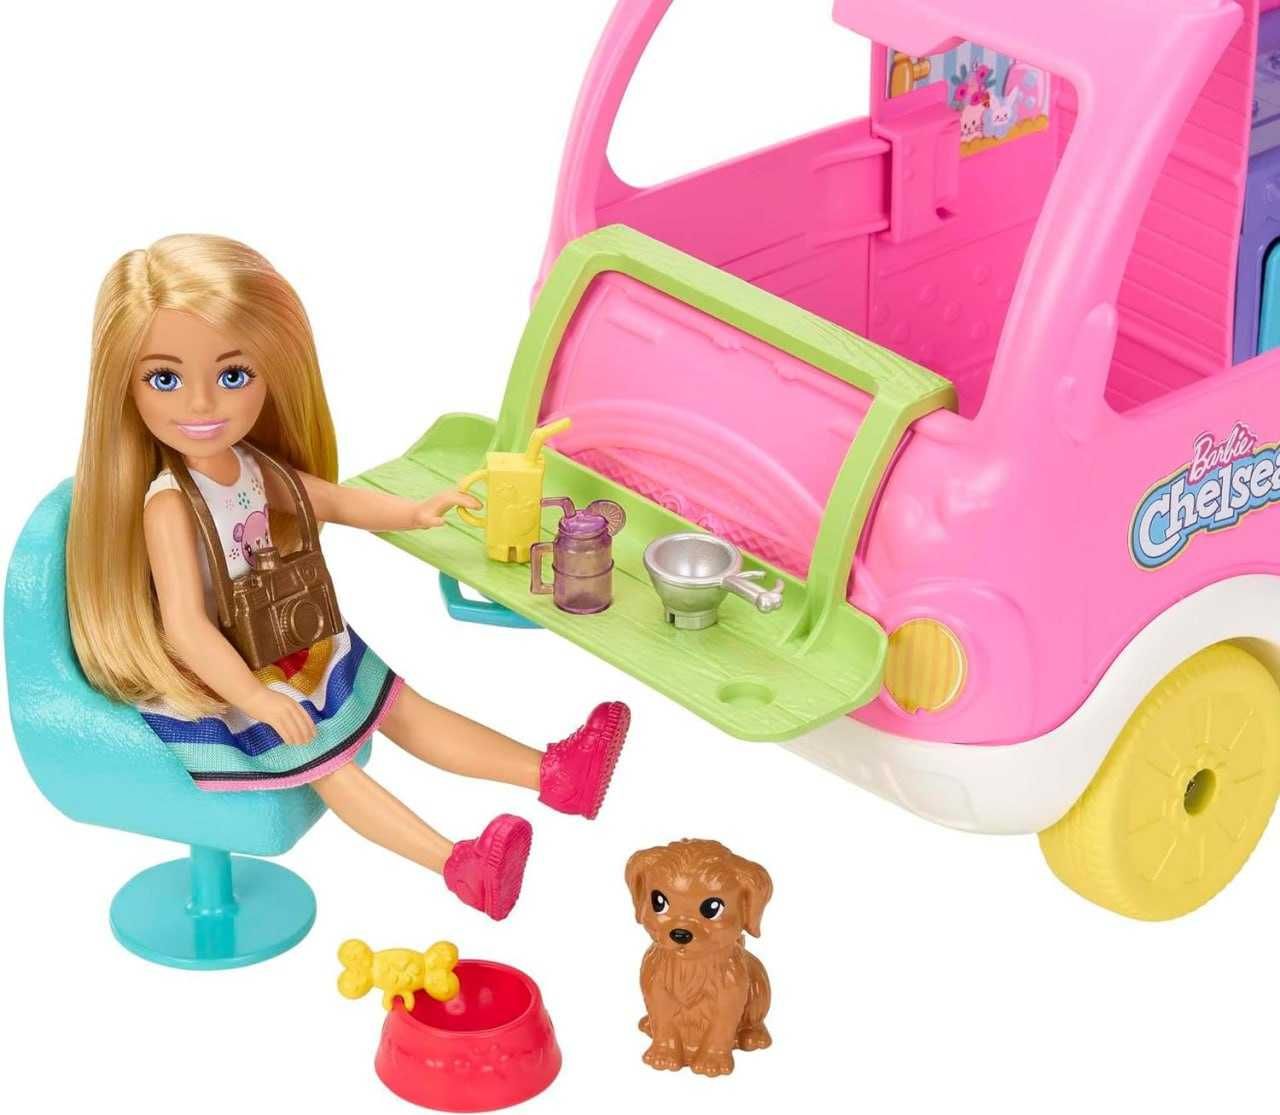 Barbie Camper игровой набор Челси 2 в 1 с маленькой куклой